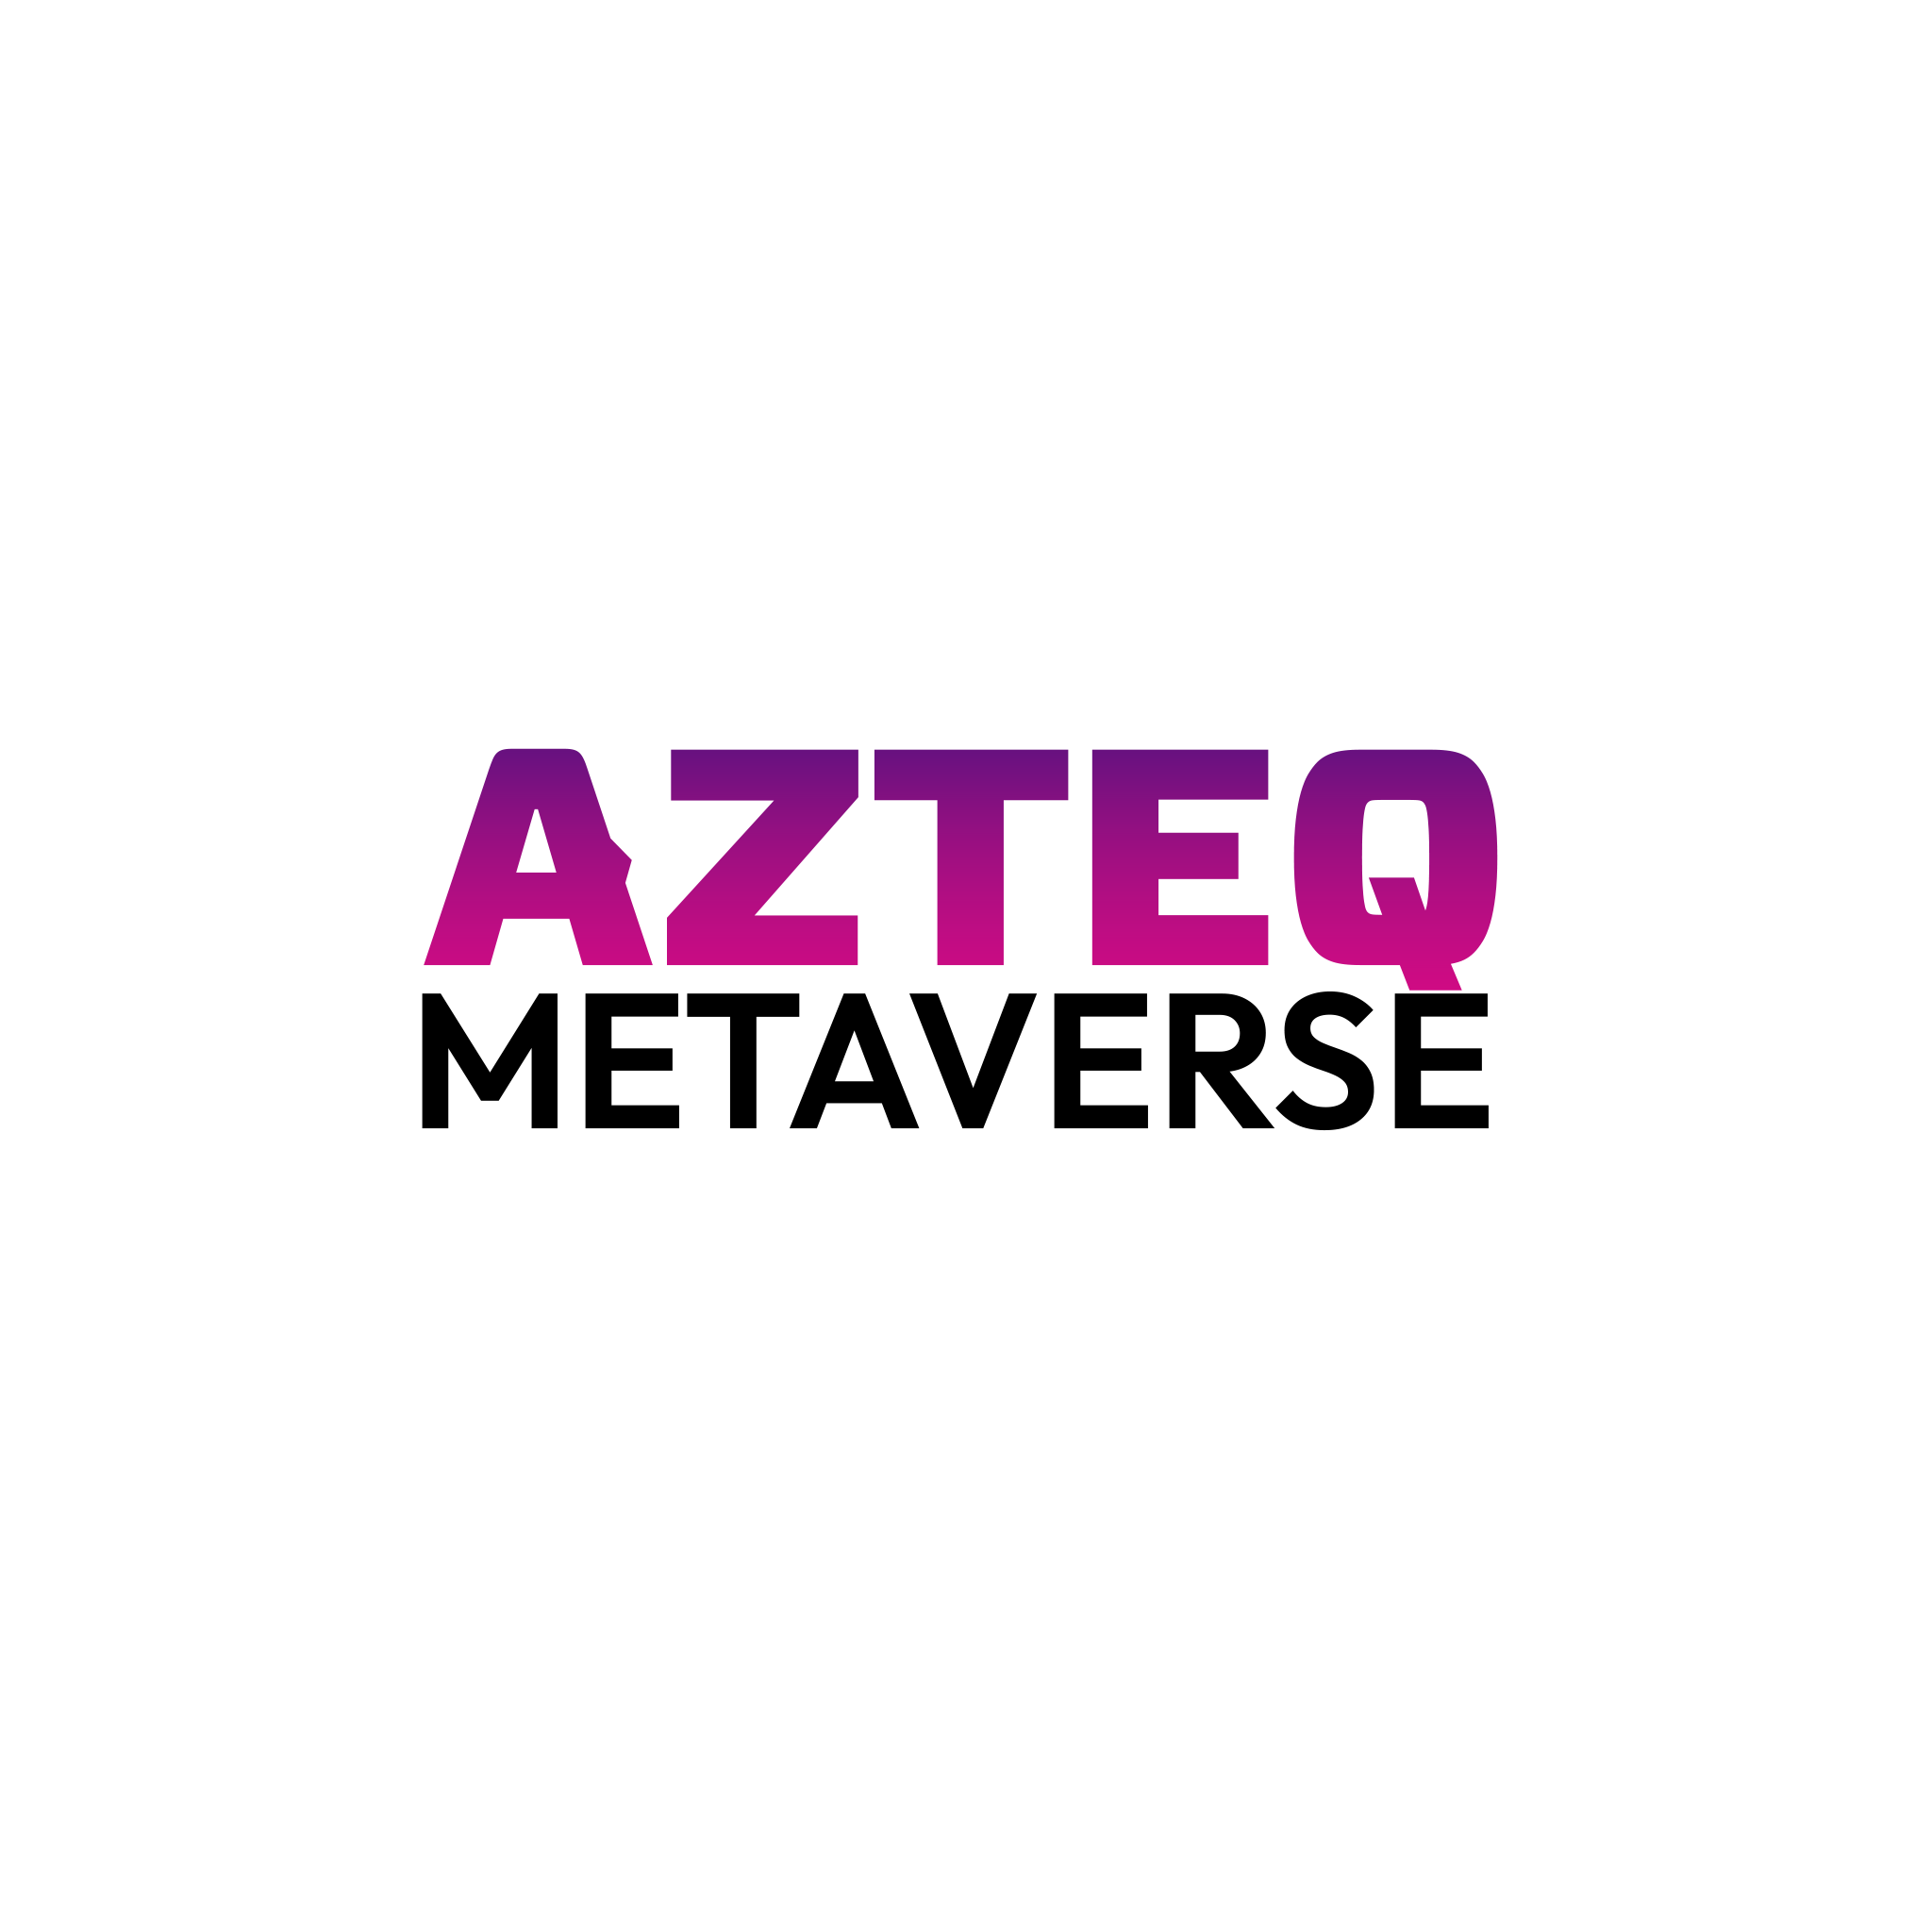 AZTEQ Metaverse